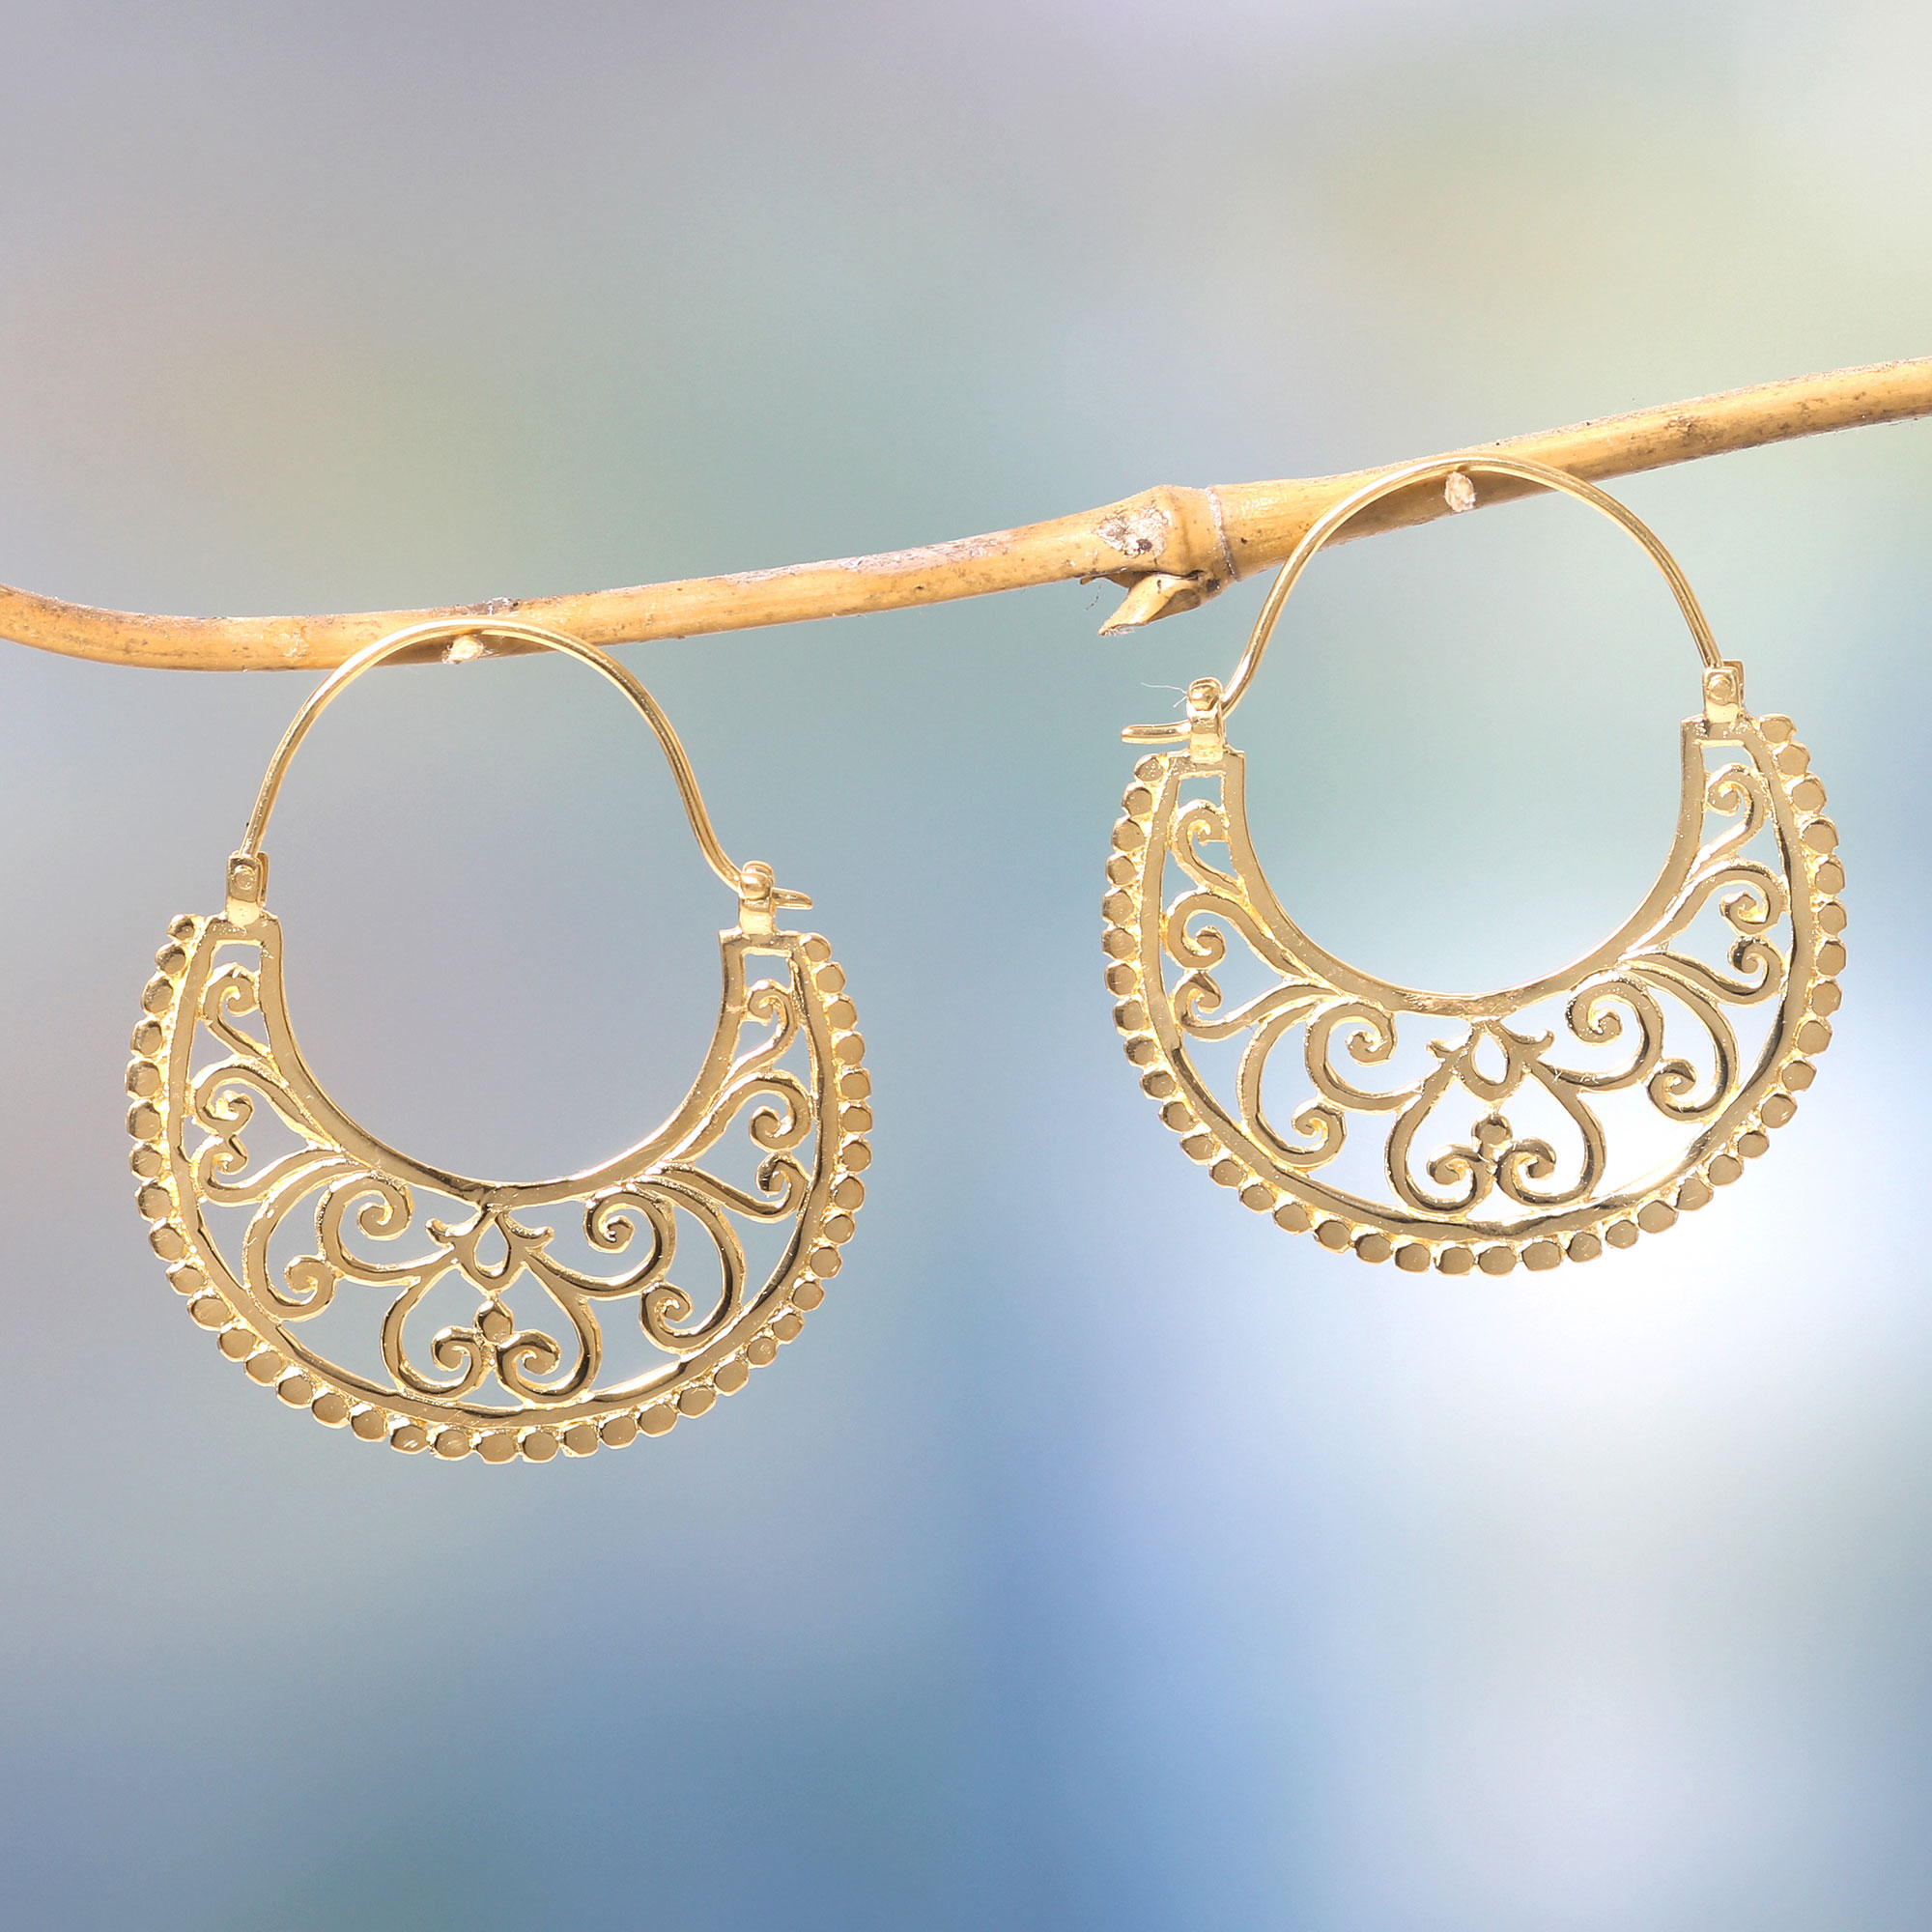 Unique Hoop Earrings in 22k Gold Vermeil from Bali - Moonlit Garden | NOVICA